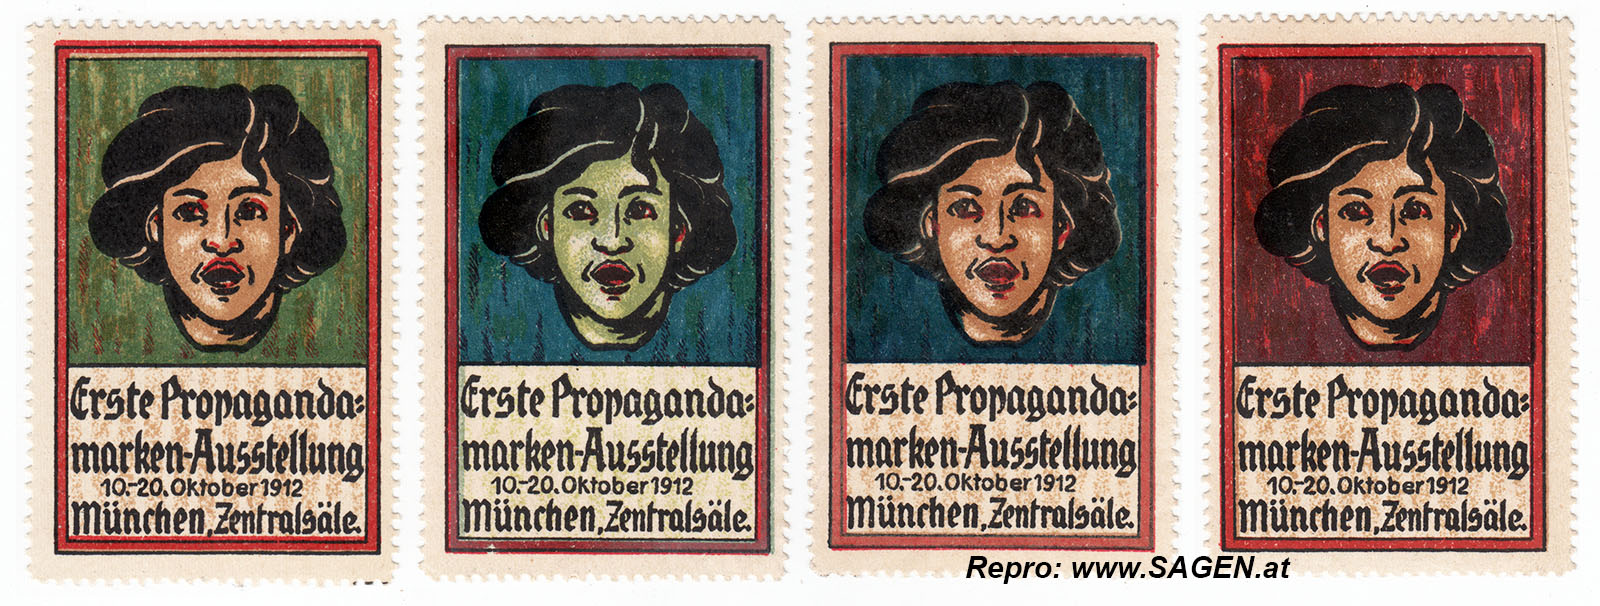 Reklamemarken Propagandamarken-Ausstellung München 1912